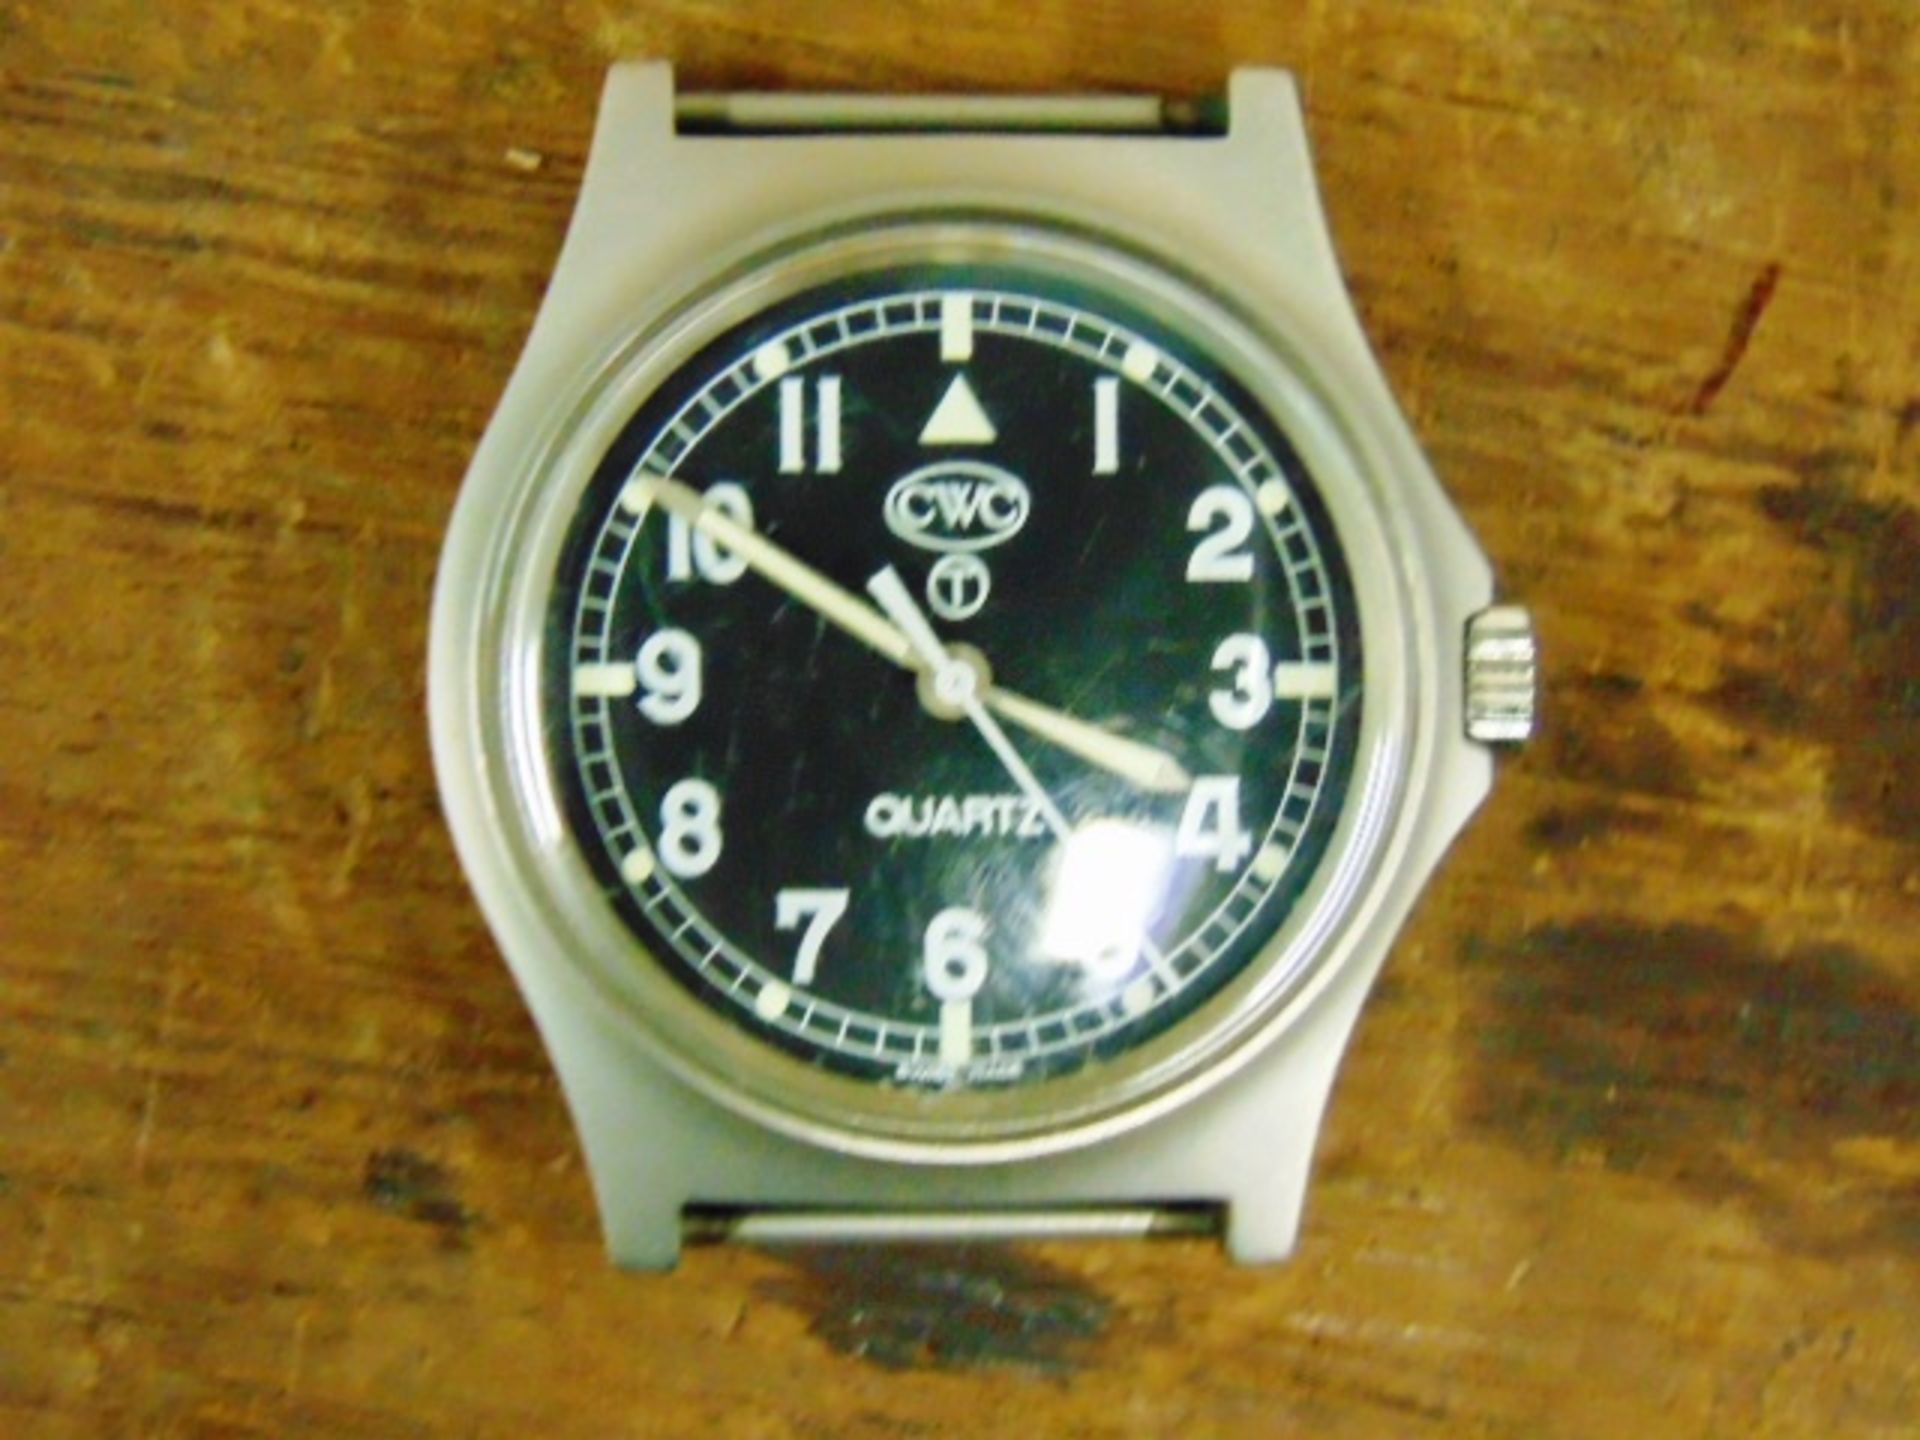 Unissued Genuine, Navy issue 0552, CWC quartz wrist watch - Image 5 of 6